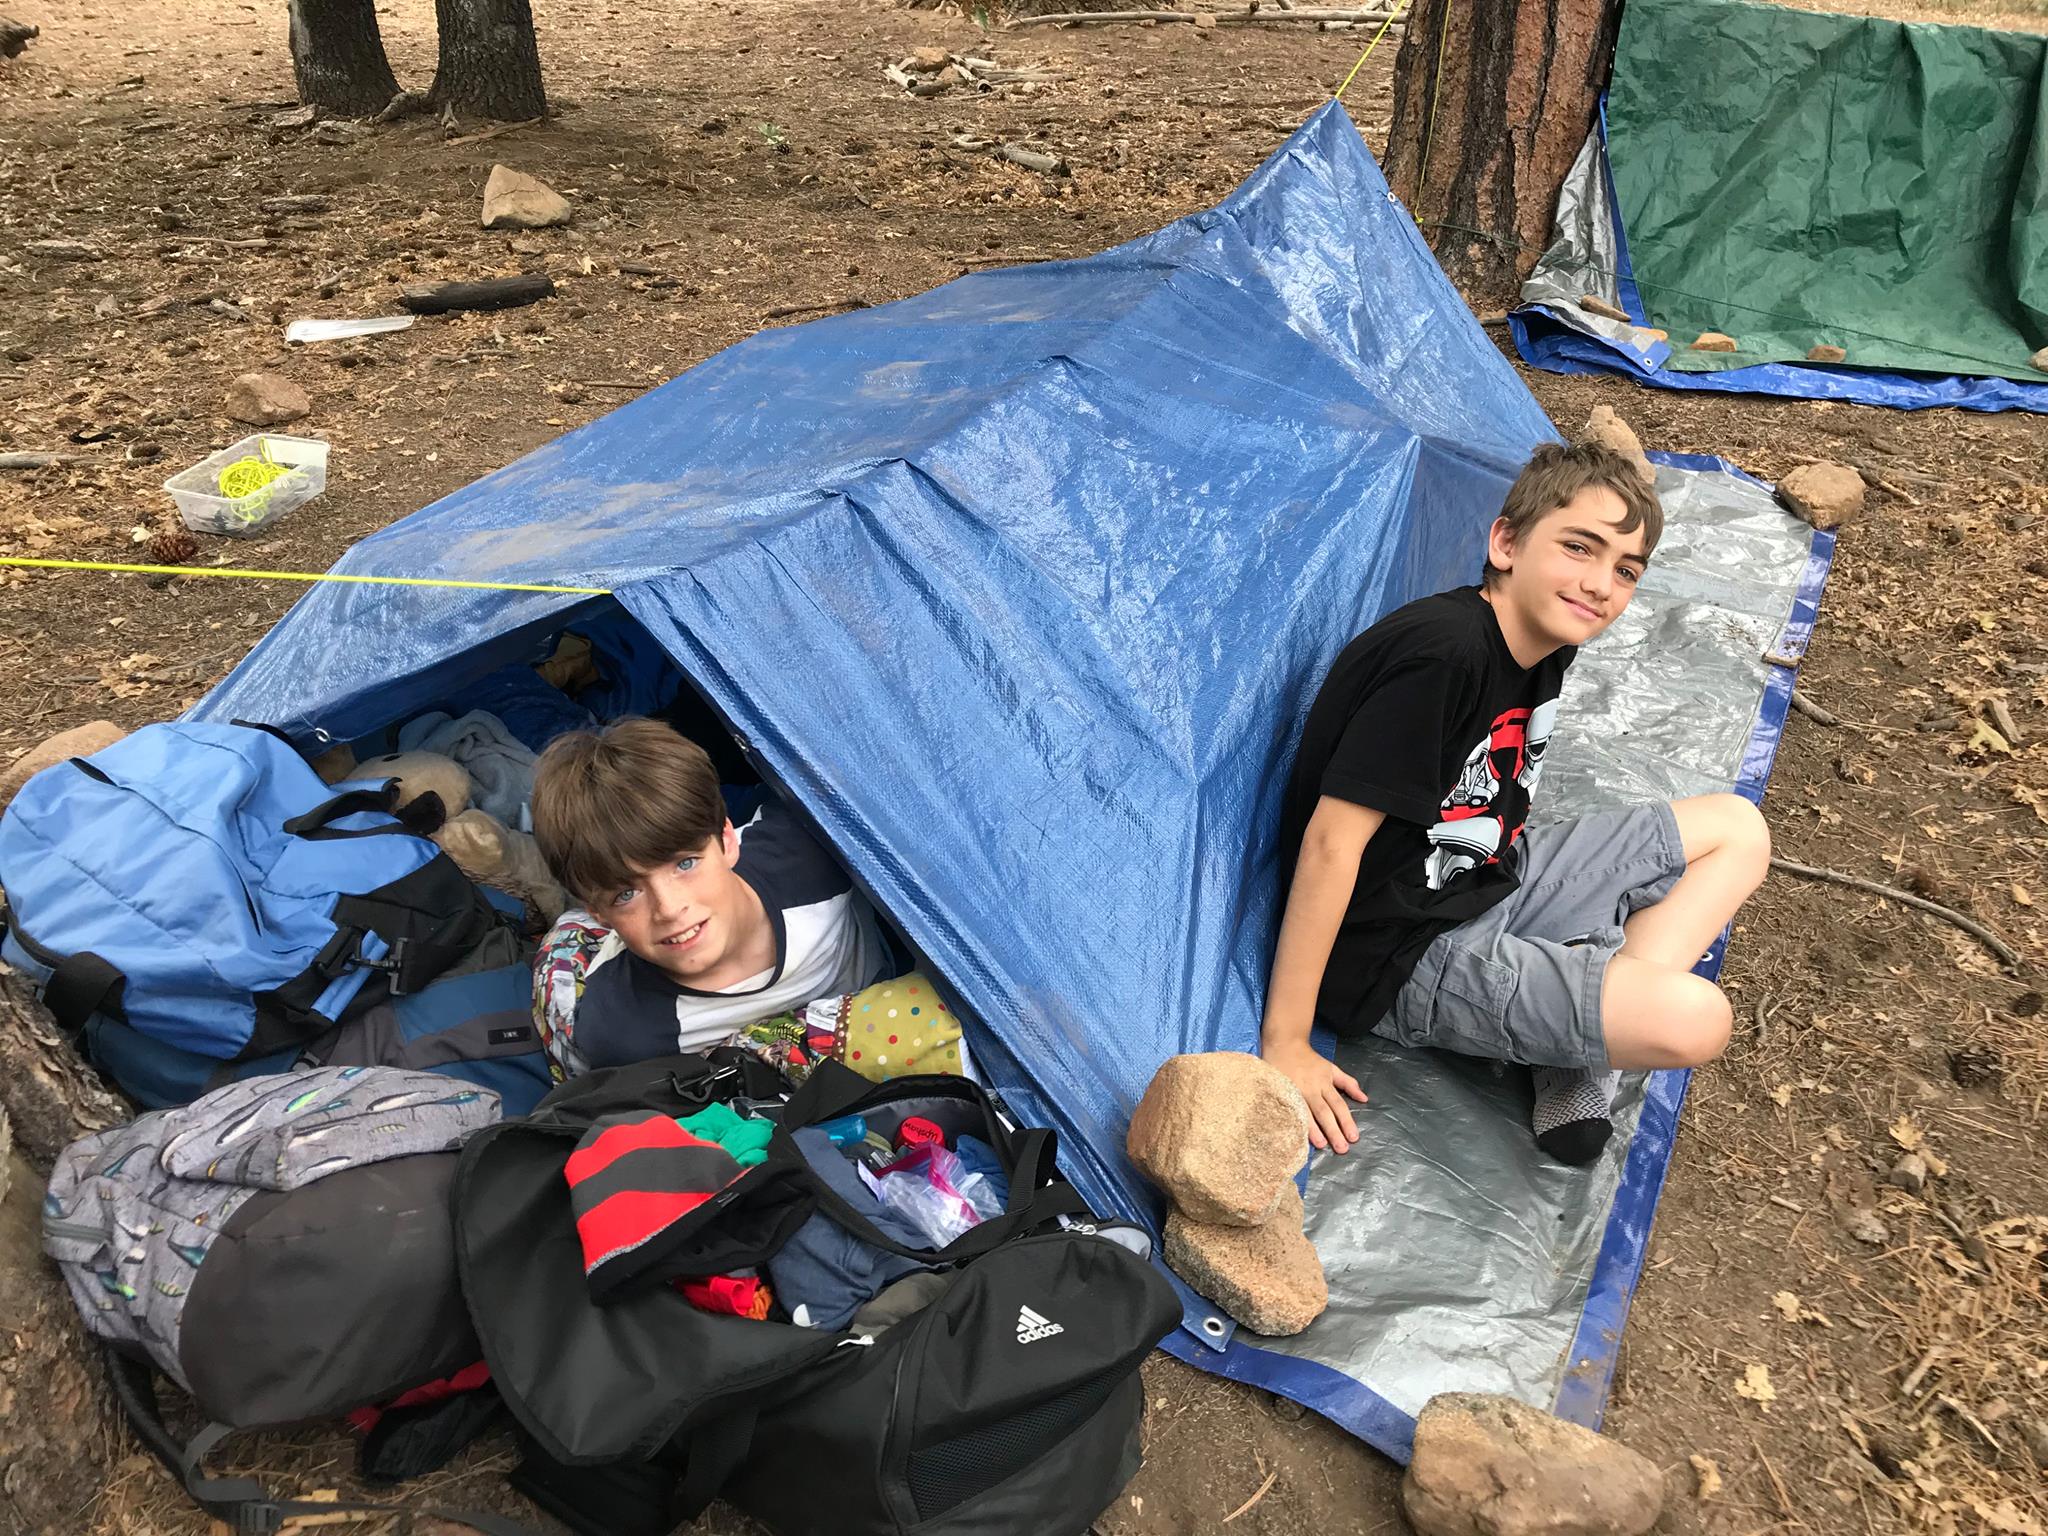 enfants Adventure Sleepover camping militaire Dôme Tente & sac de couchage 